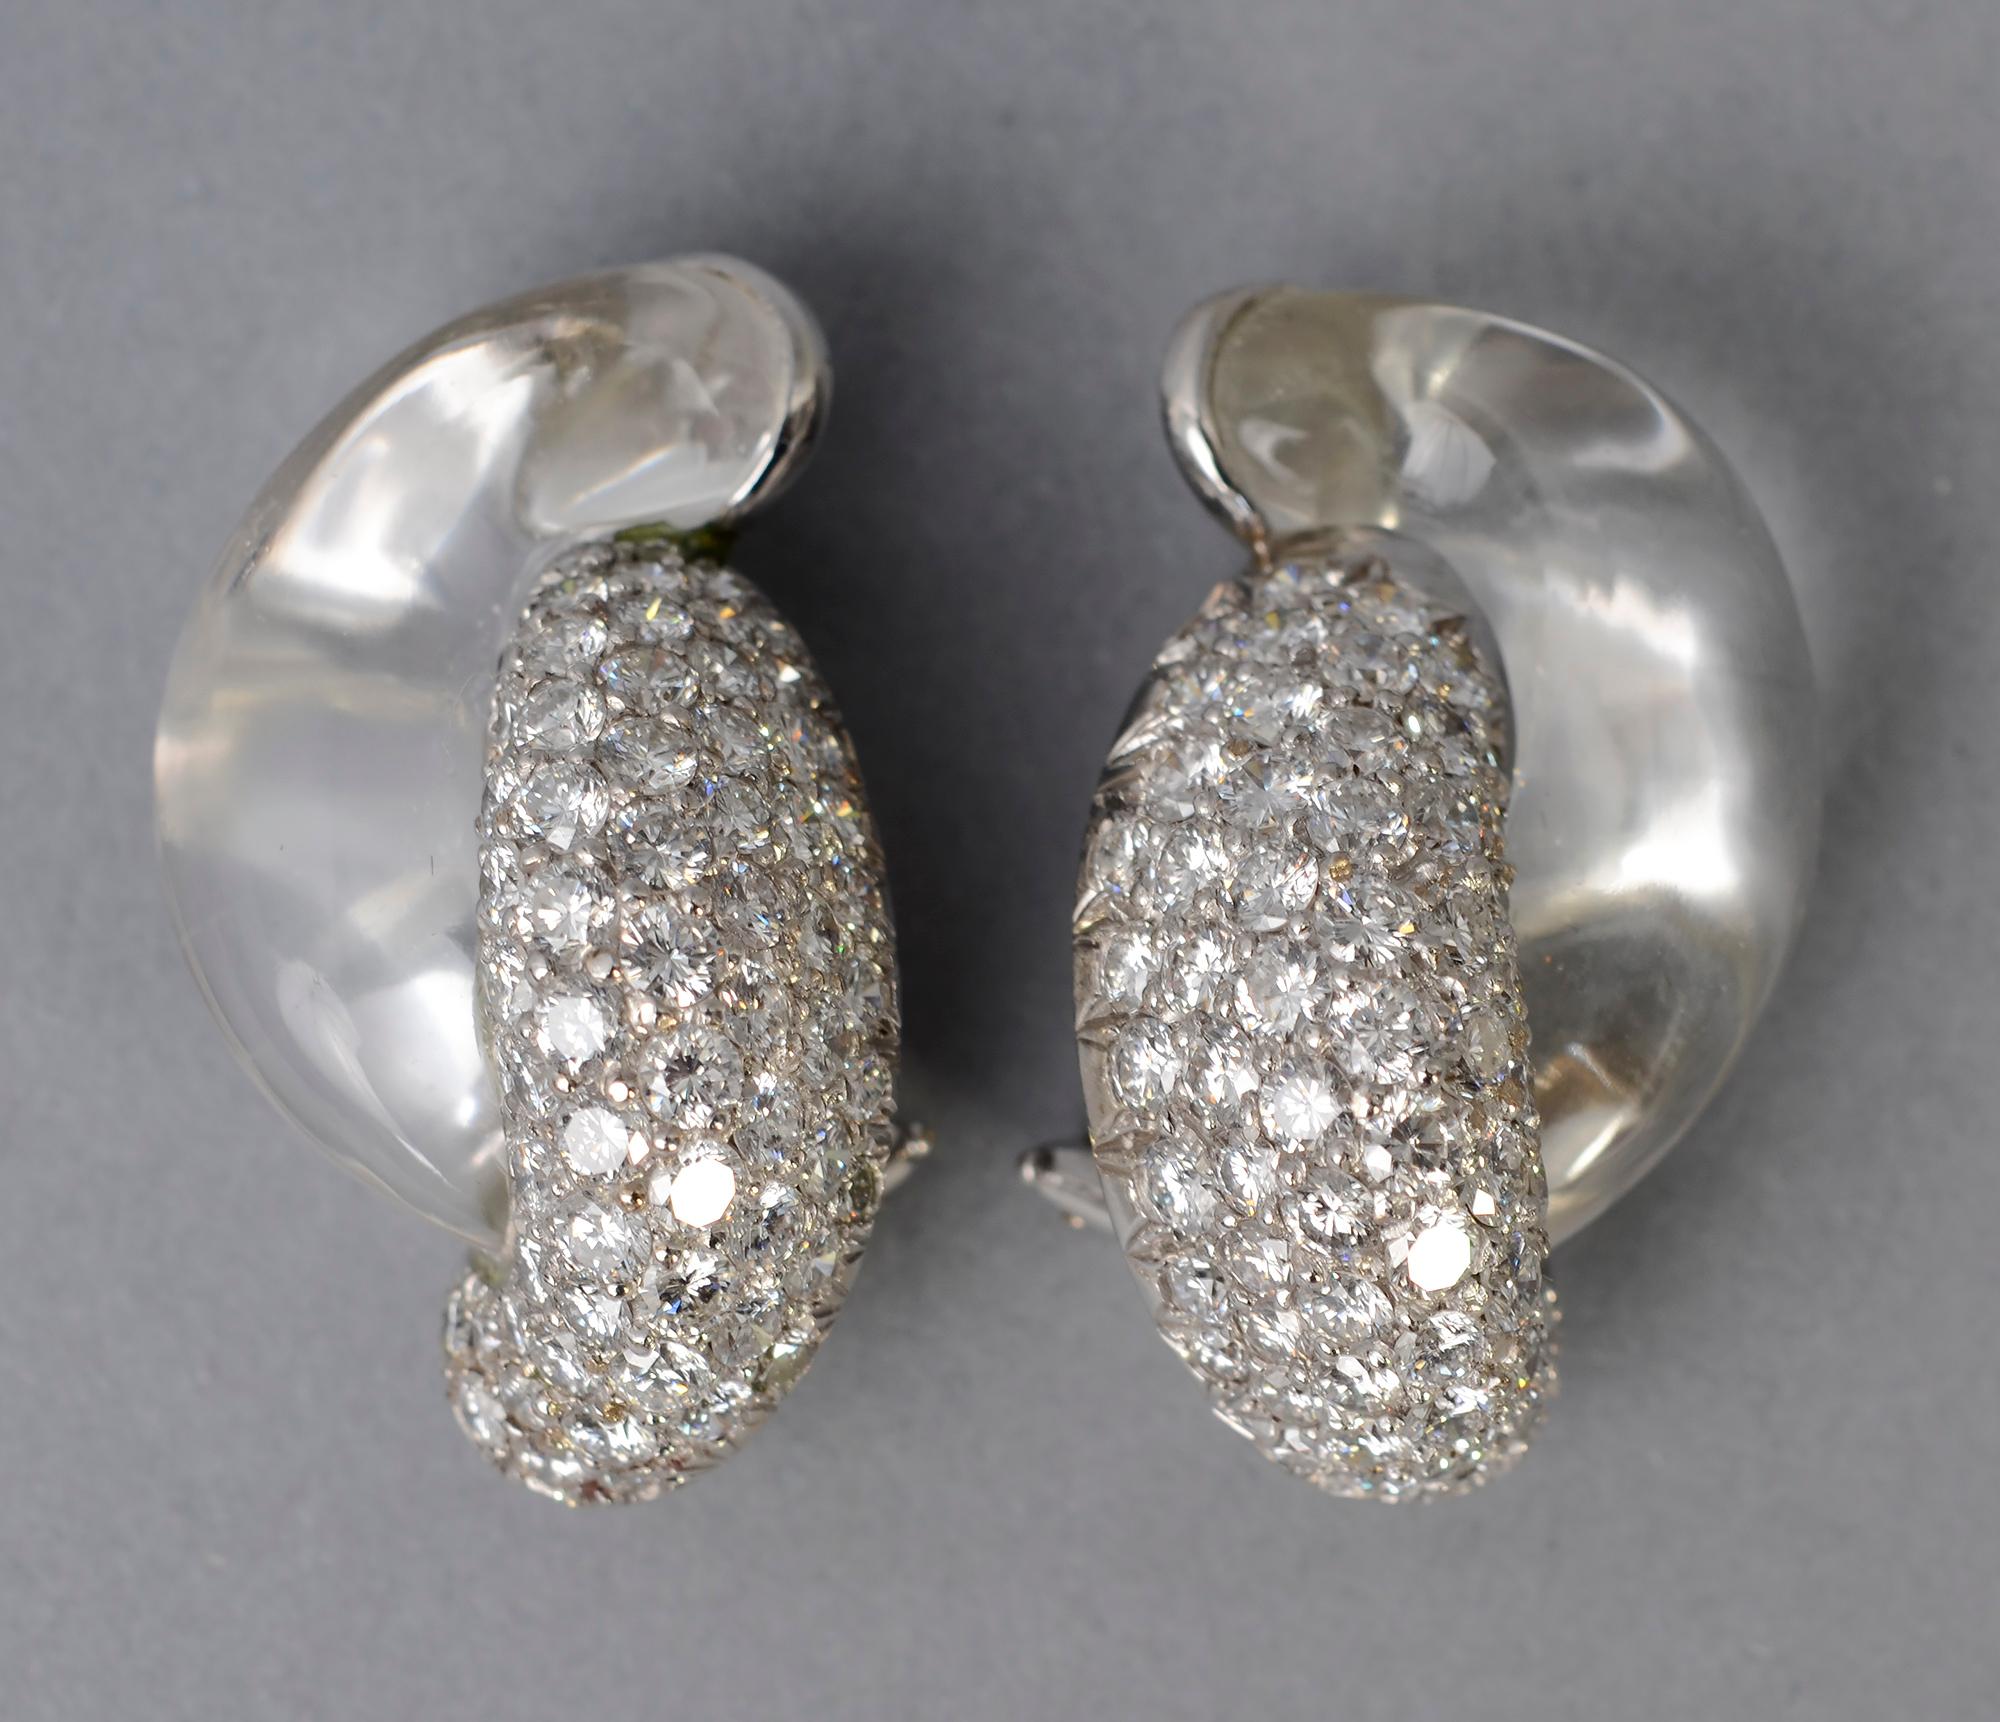 Exquisite klassische Seaman Schepps Ohrringe aus Diamanten und Bergkristall. Sie sind in 18 Karat Weißgold gefasst. Clip-Rückwände können leicht in Pfosten umgewandelt werden.
Signiert und nummeriert. Schepps bietet diese Ohrringe derzeit für